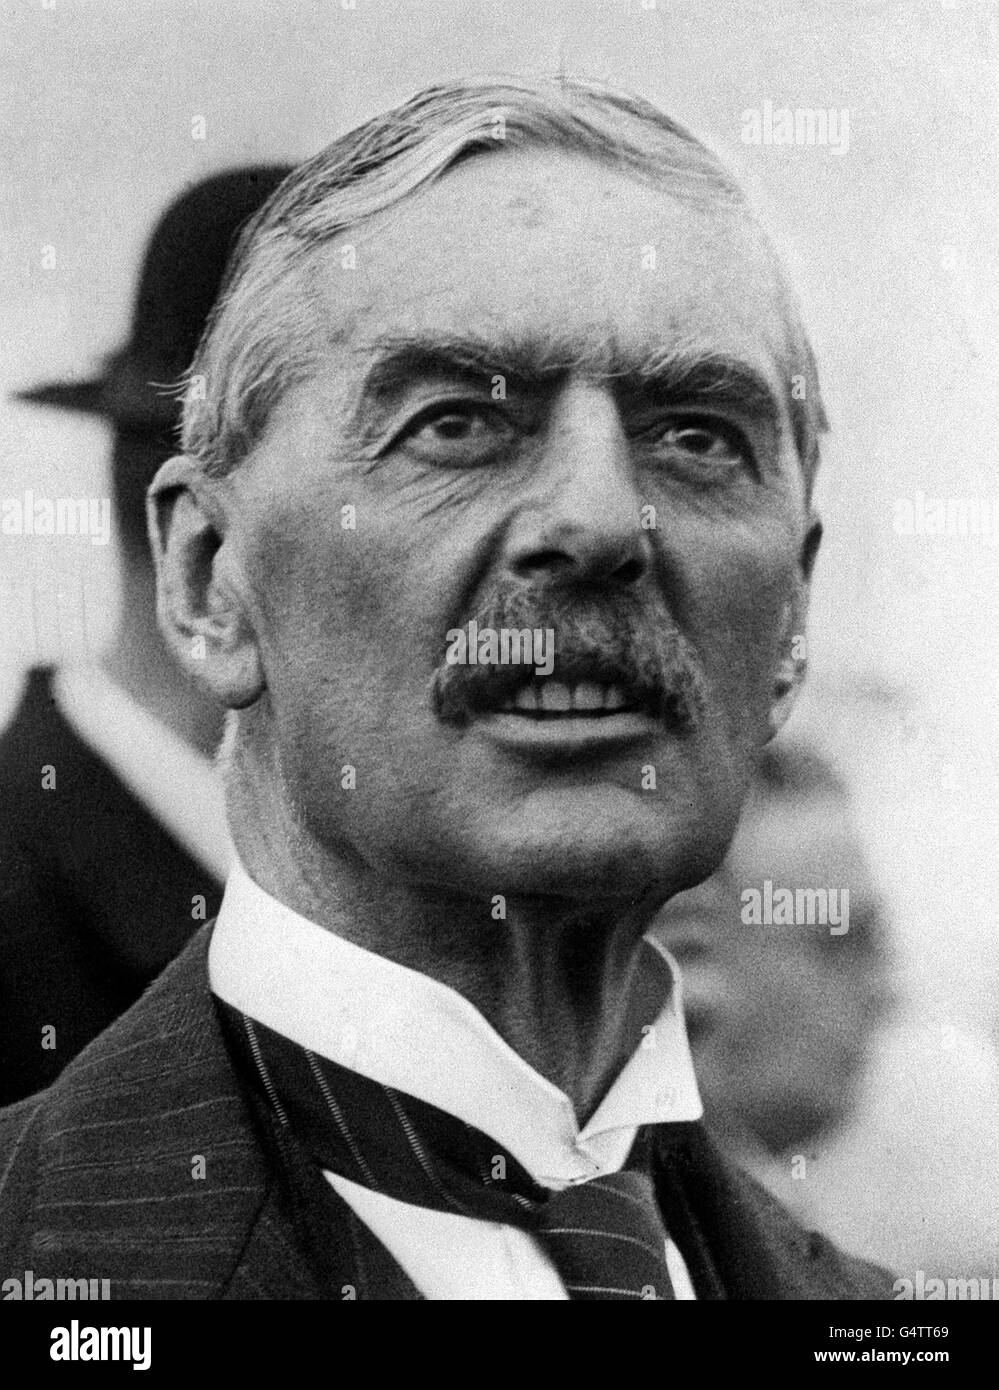 SEPTEMBRE 1938 : Neville Chamberlain (1869-1940), homme d'État conservateur britannique et Premier ministre (1937-1940) qui a poursuivi une politique d'apaisement envers l'Allemagne nazie. Après l'invasion allemande de la Pologne, il a déclaré la guerre le 3 septembre 1939. Banque D'Images